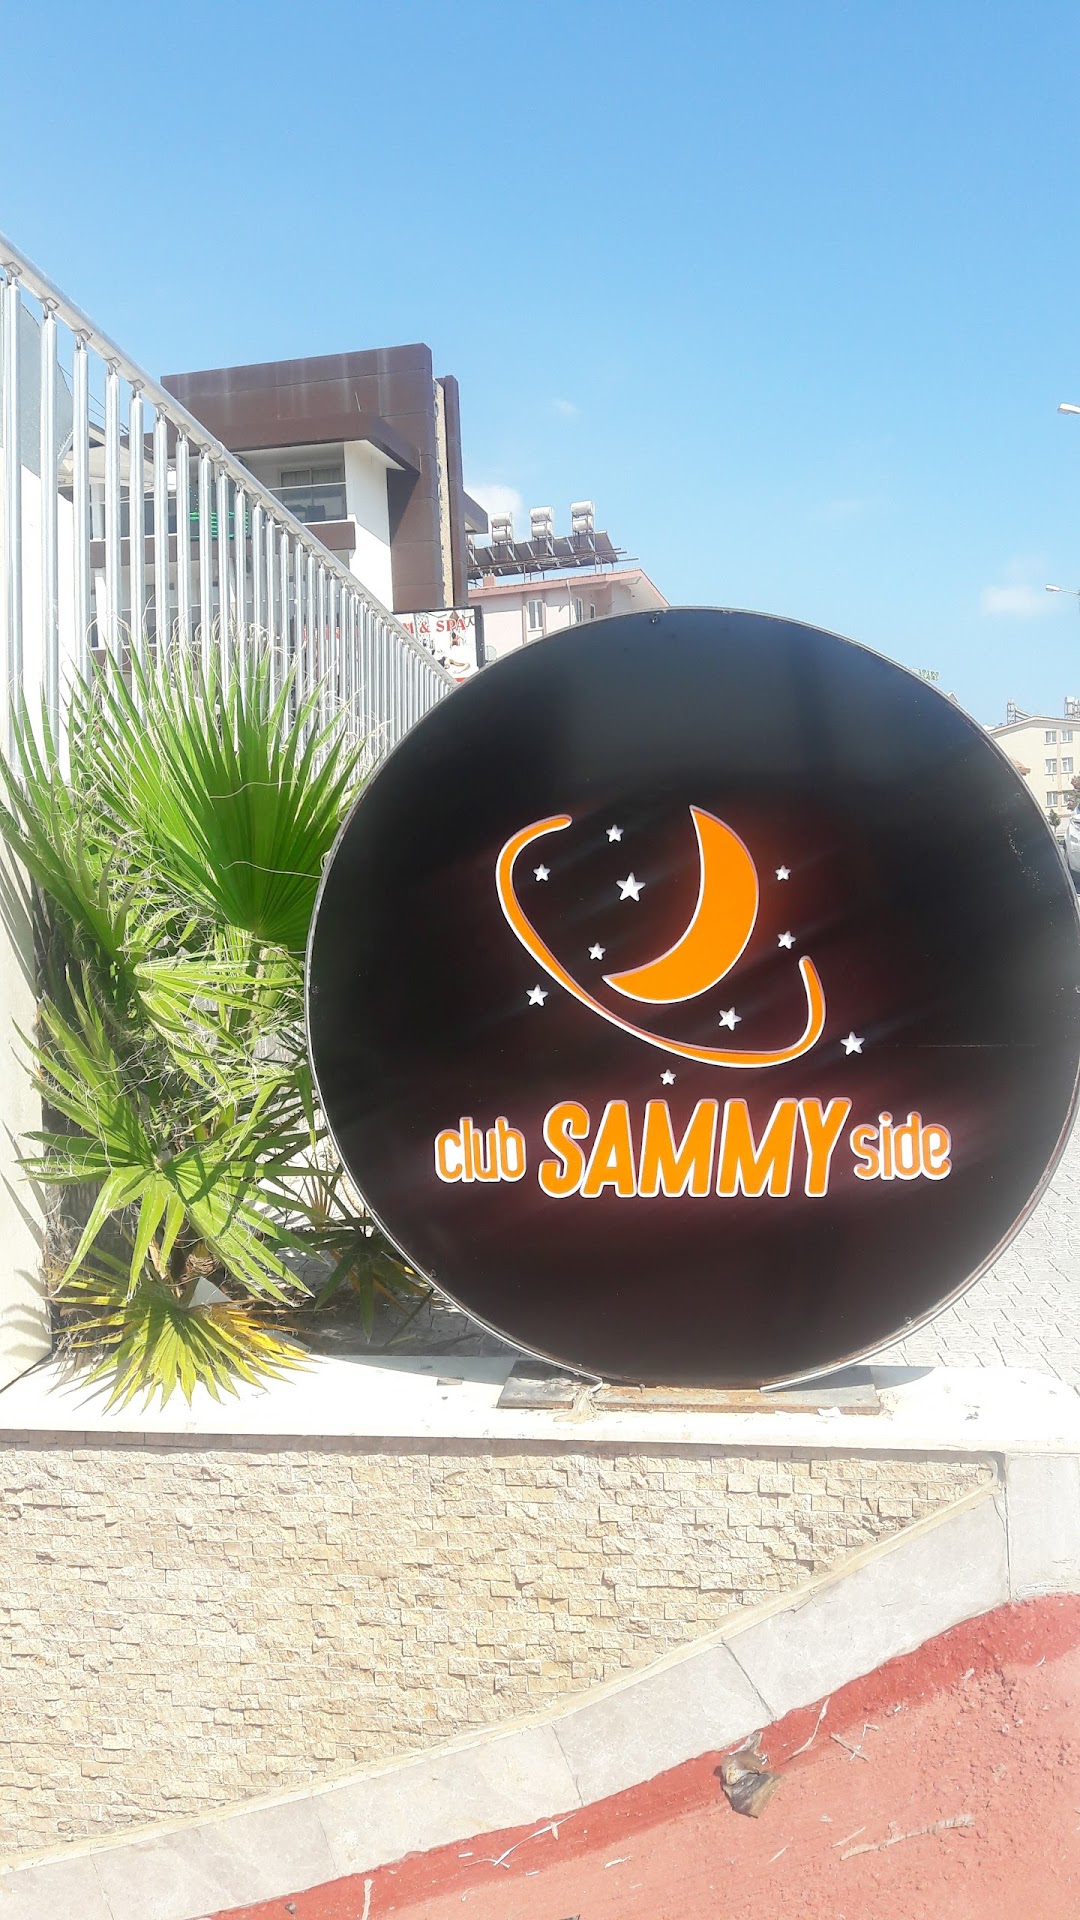 Club Sammy Side